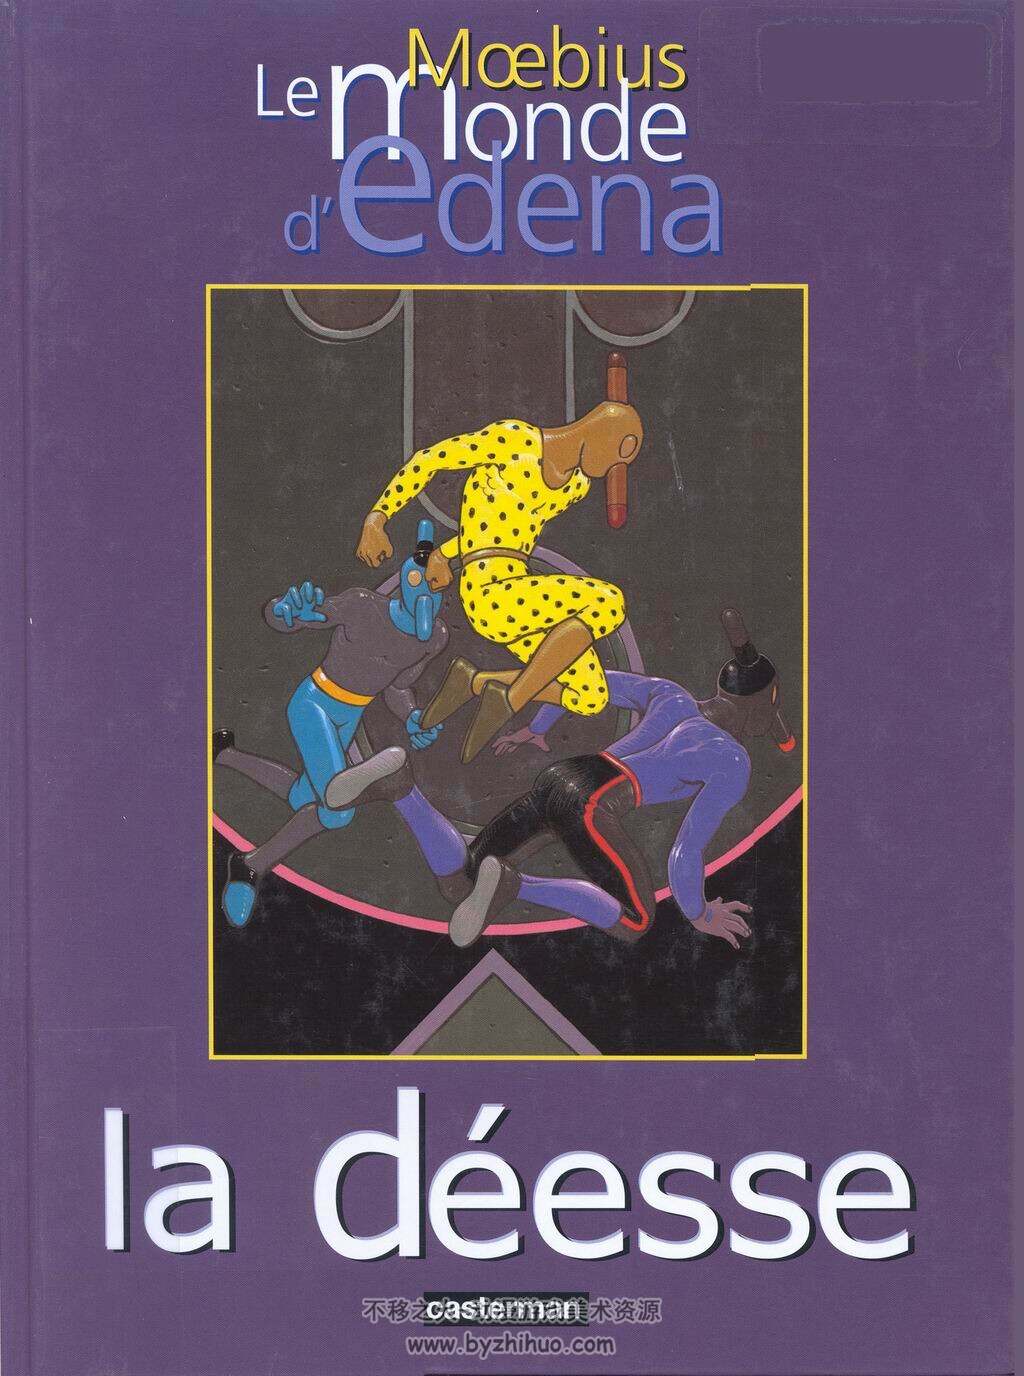 莫比斯作品Le Monde d'Edena易登纳世界系列(4册)